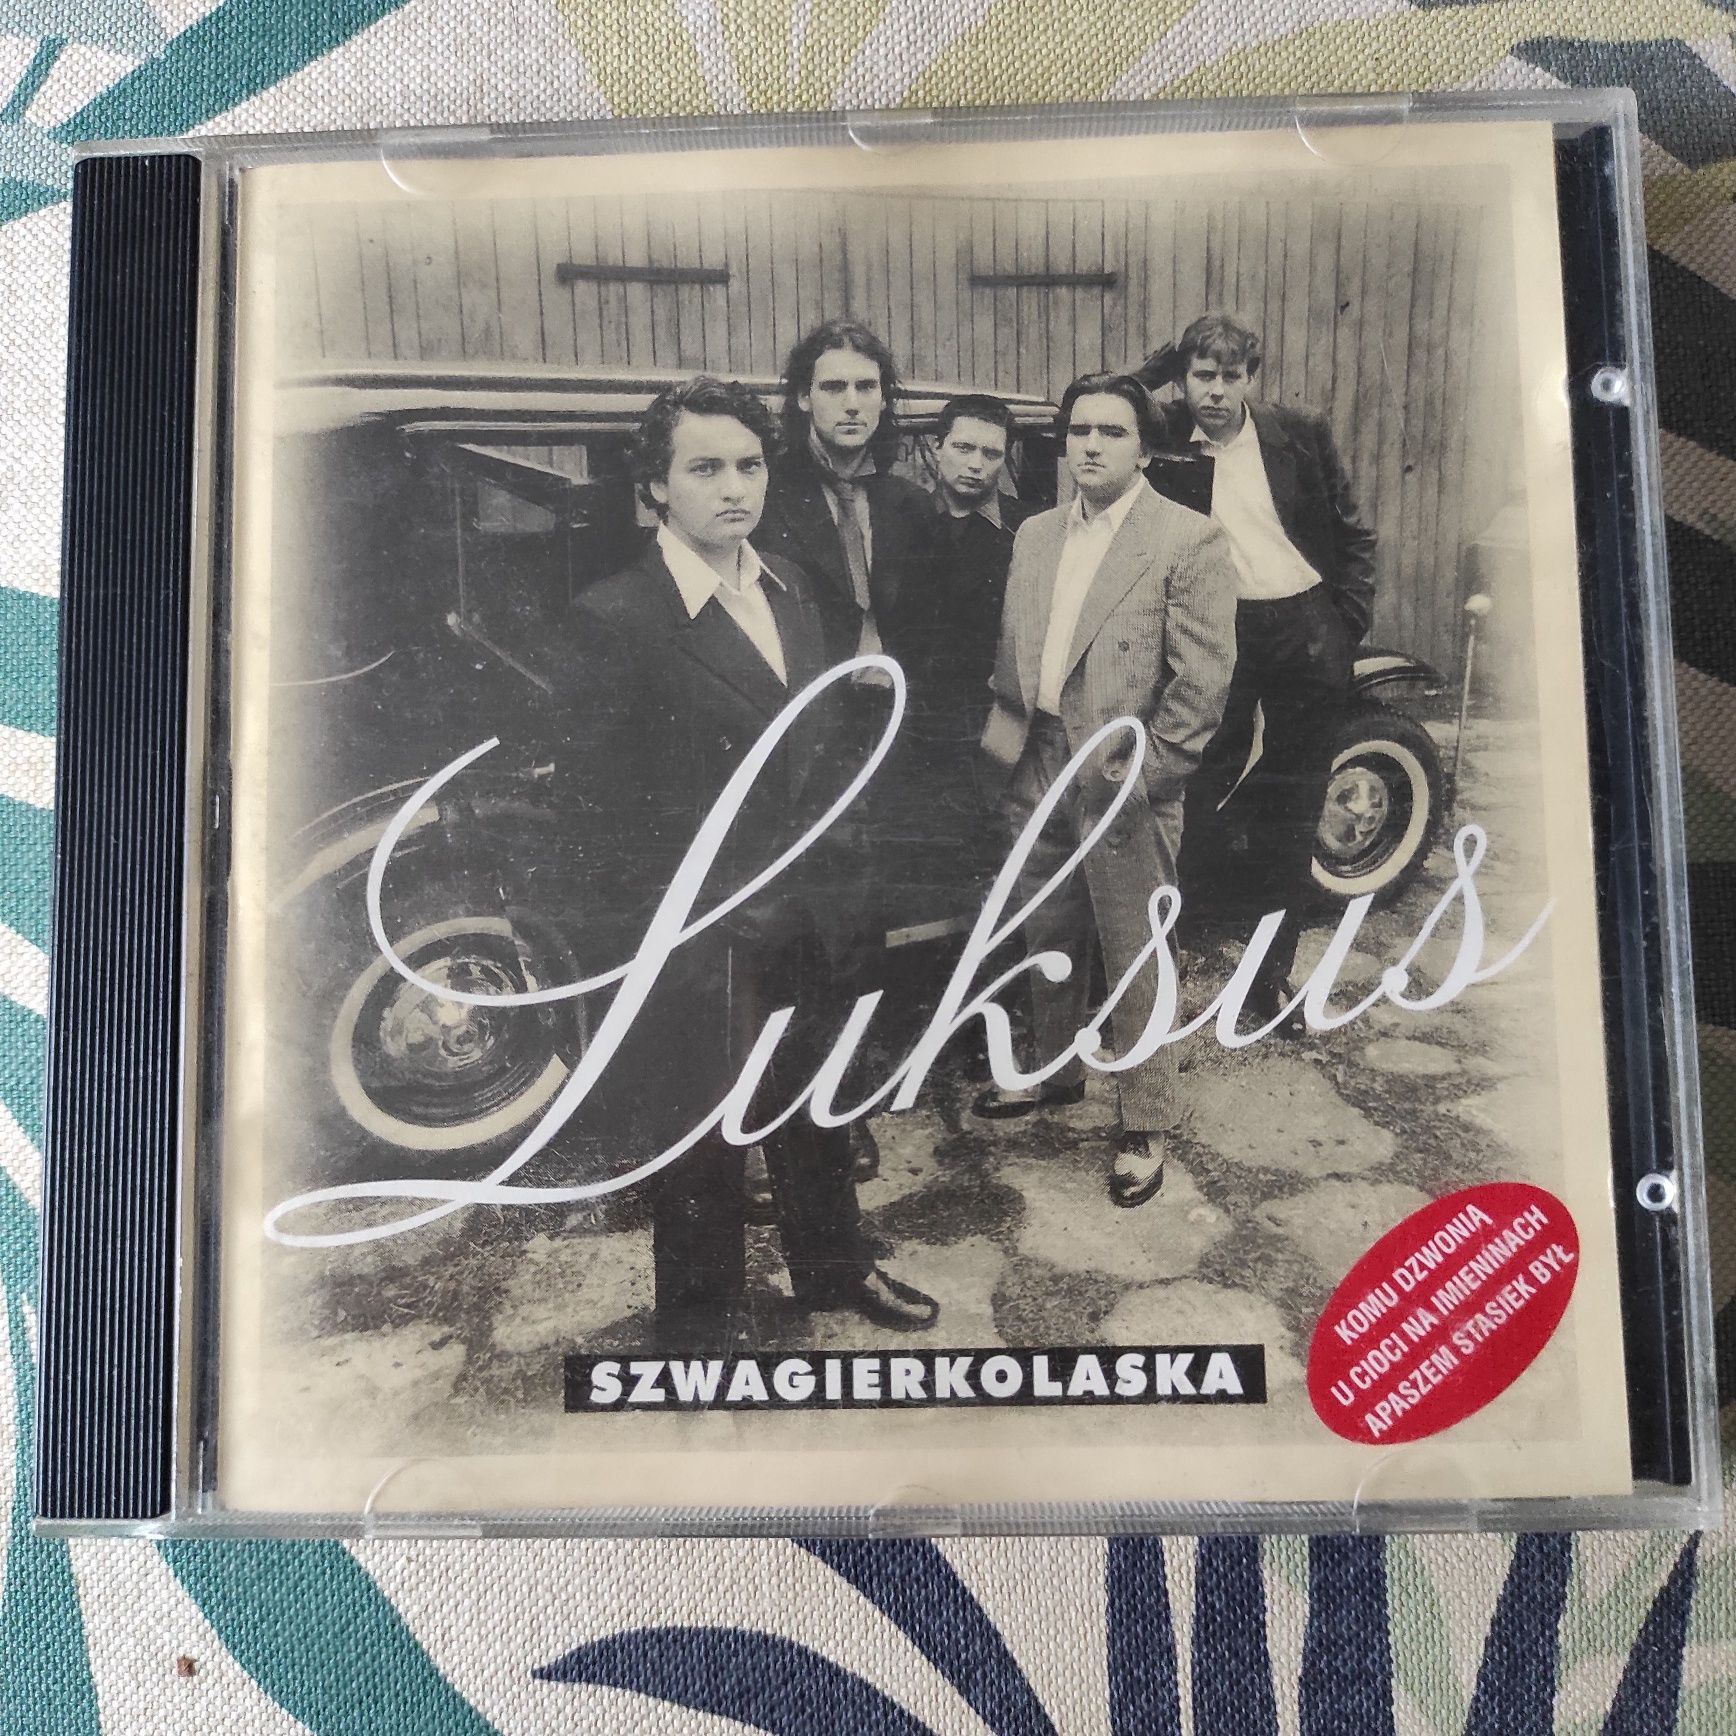 Szwagierkolaska Luksus płyta CD z autografami, pierwsze wydanie 1995